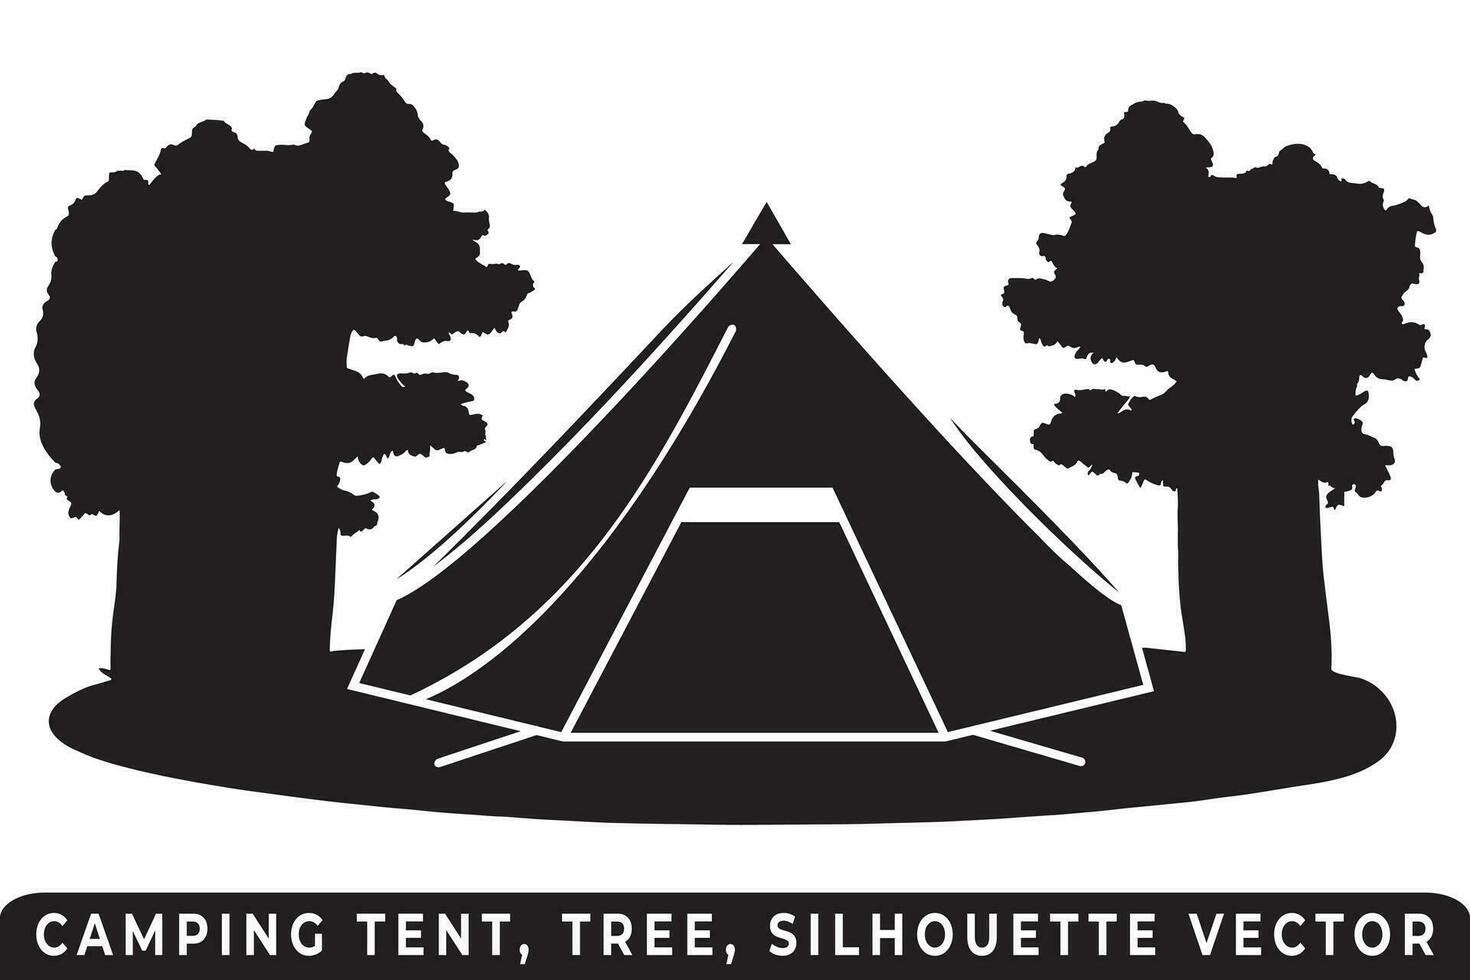 campeggio tenda silhouette vettore, tenda e albero vettore, campeggio silhouette, all'aperto avventura vettore, campeggio tenda icona, foresta silhouette vettore, notte campeggio scena, notte campeggio silhouette. vettore